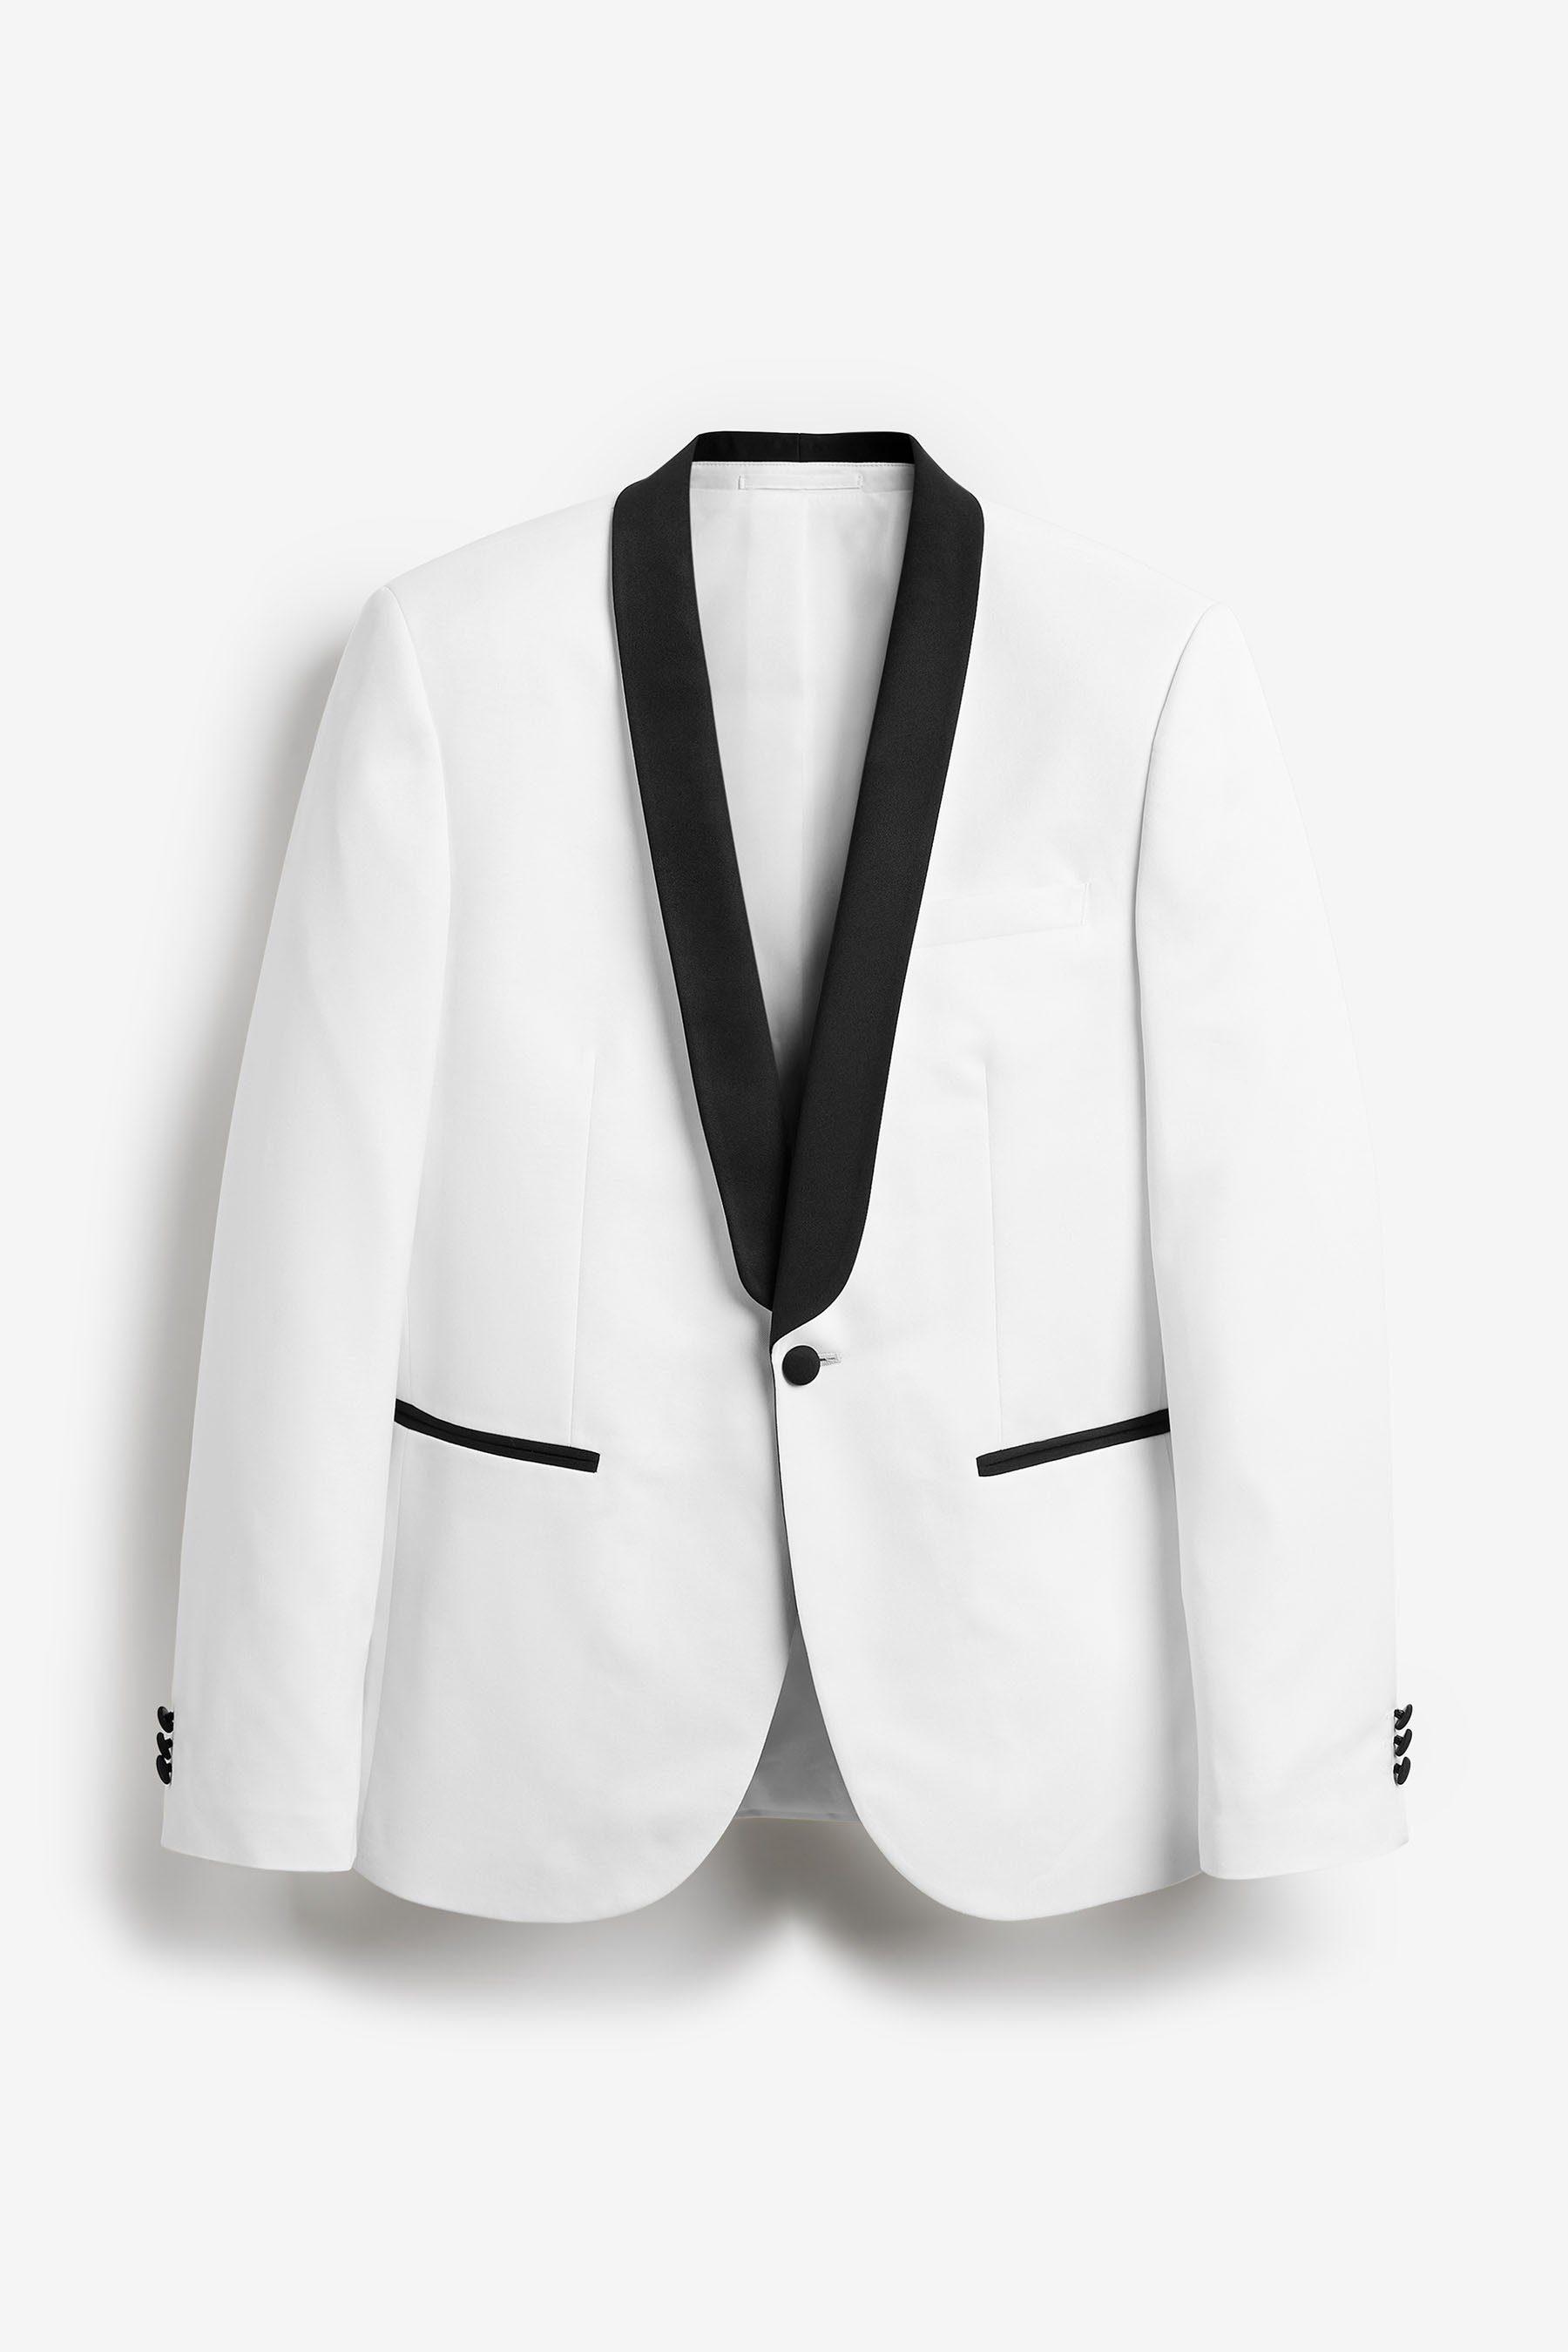 Weiße Sakkos für Herren online kaufen » Weiße Jacketts | OTTO